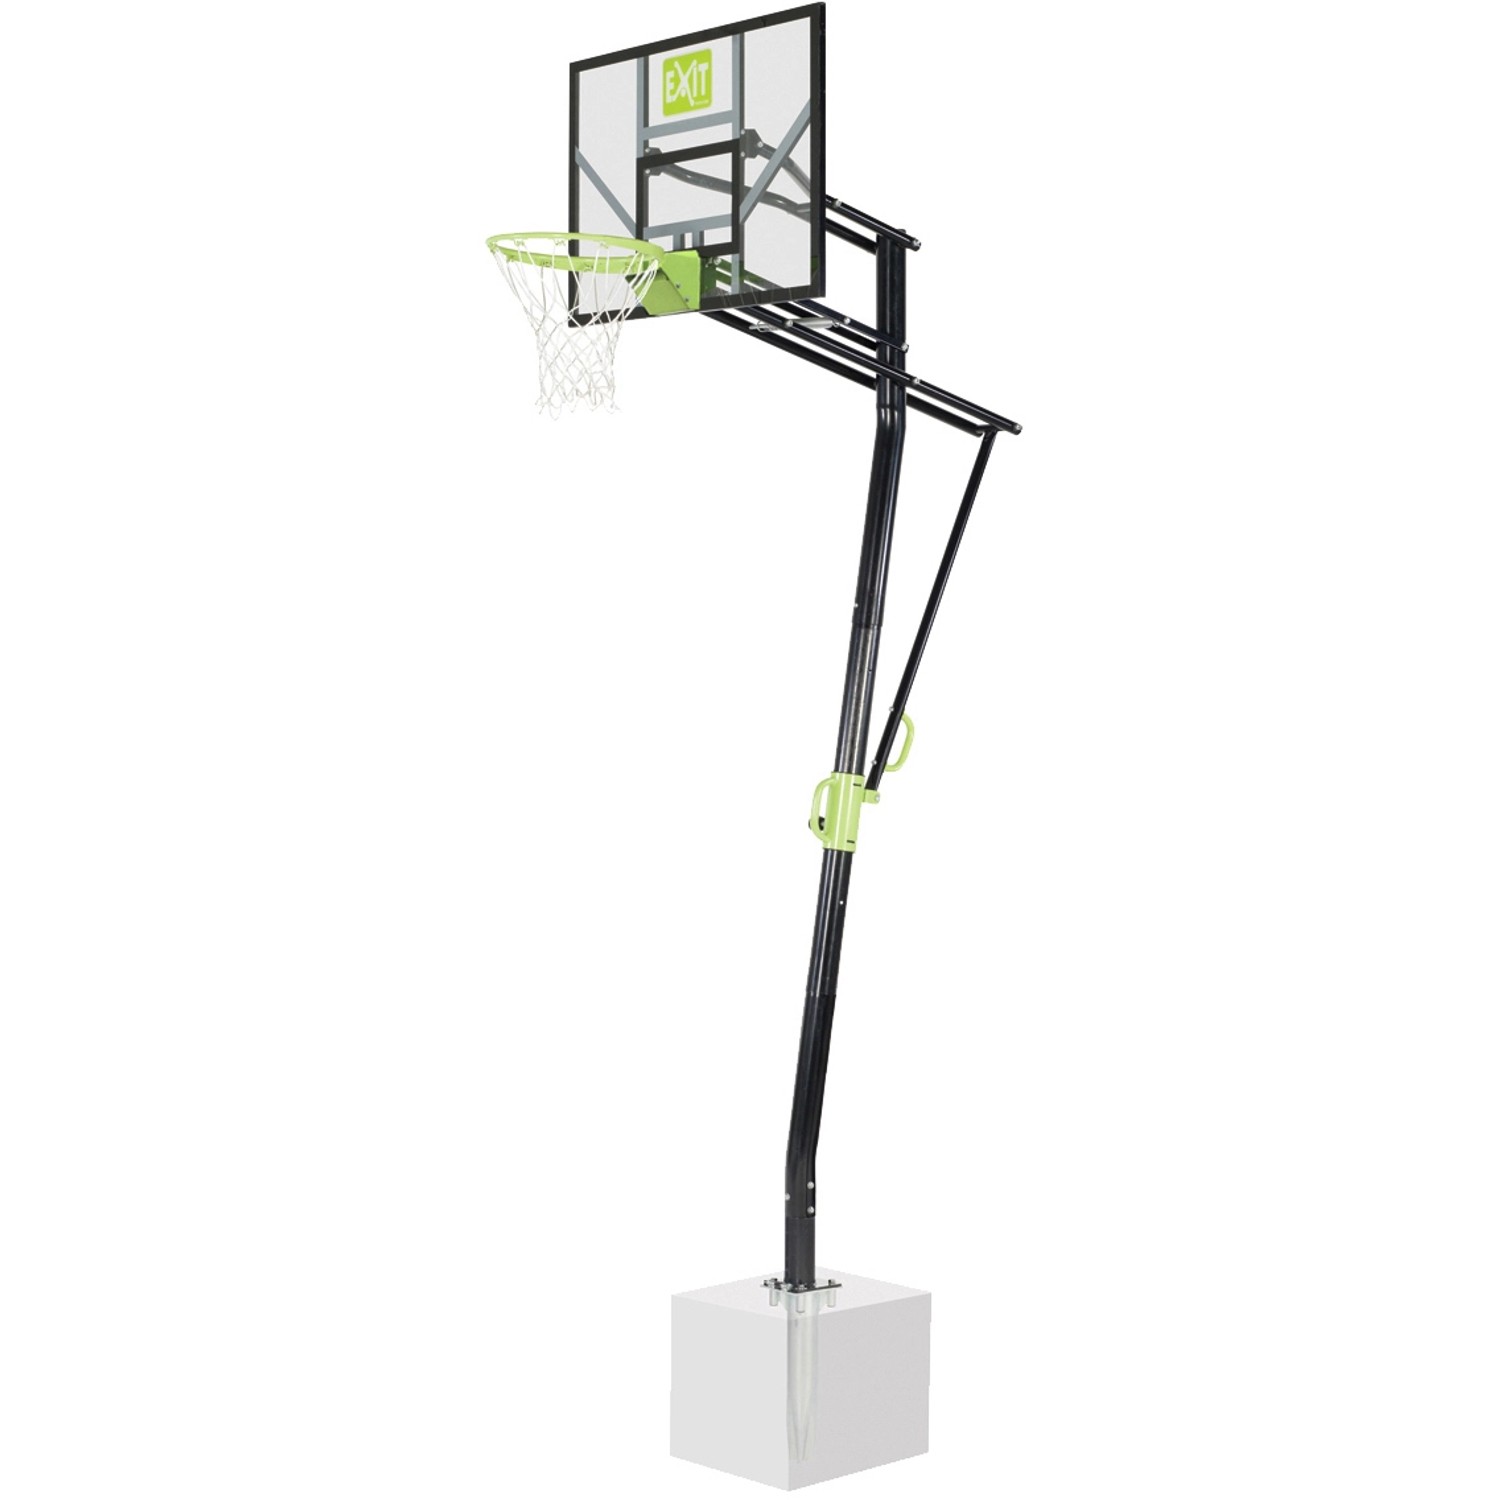 EXIT Galaxy Basketballkorb zur Bodenmontage mit Dunkring - grün/schwarz von Exit Toys